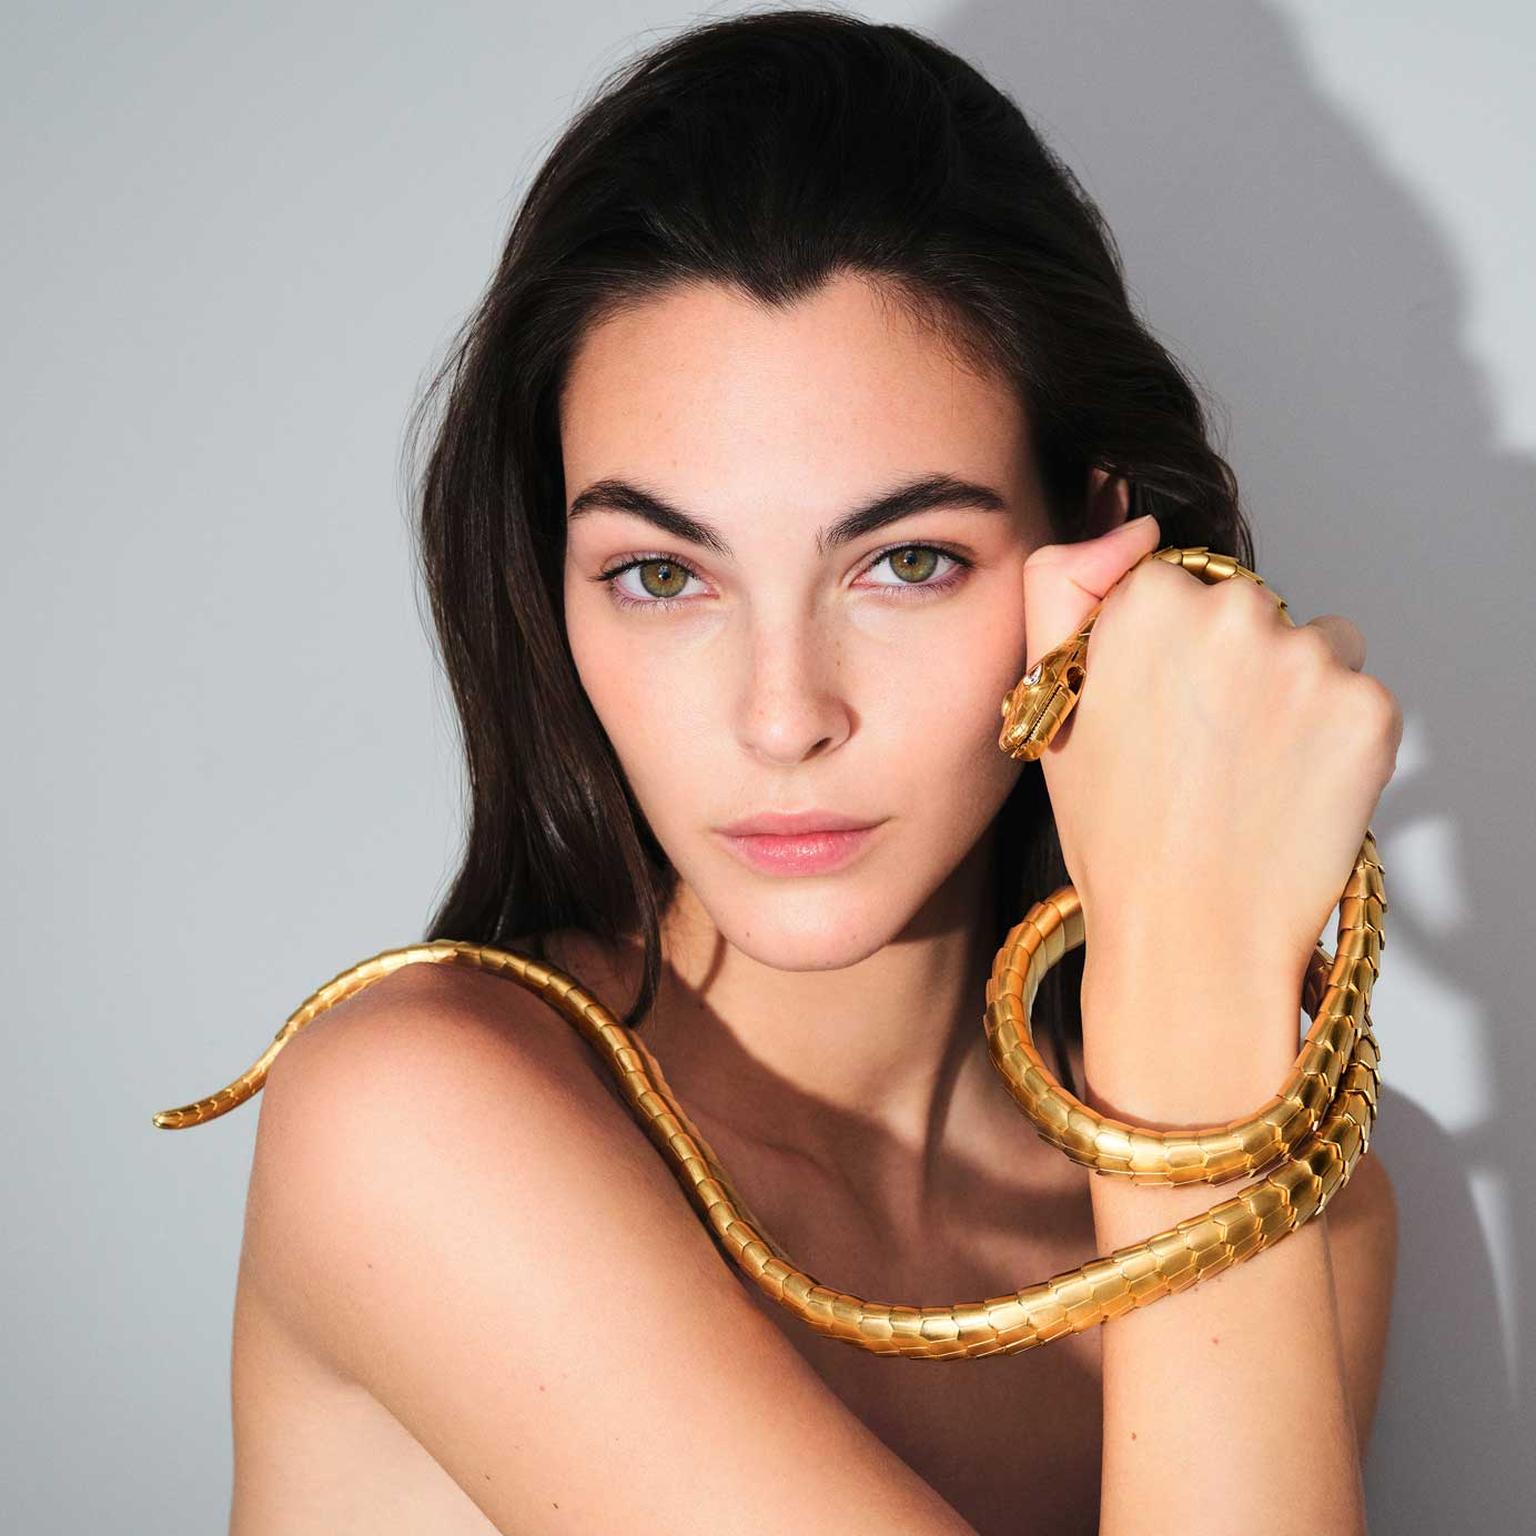 Bulgari Serpenti 75 anniversary model holding gold Serpenti necklace